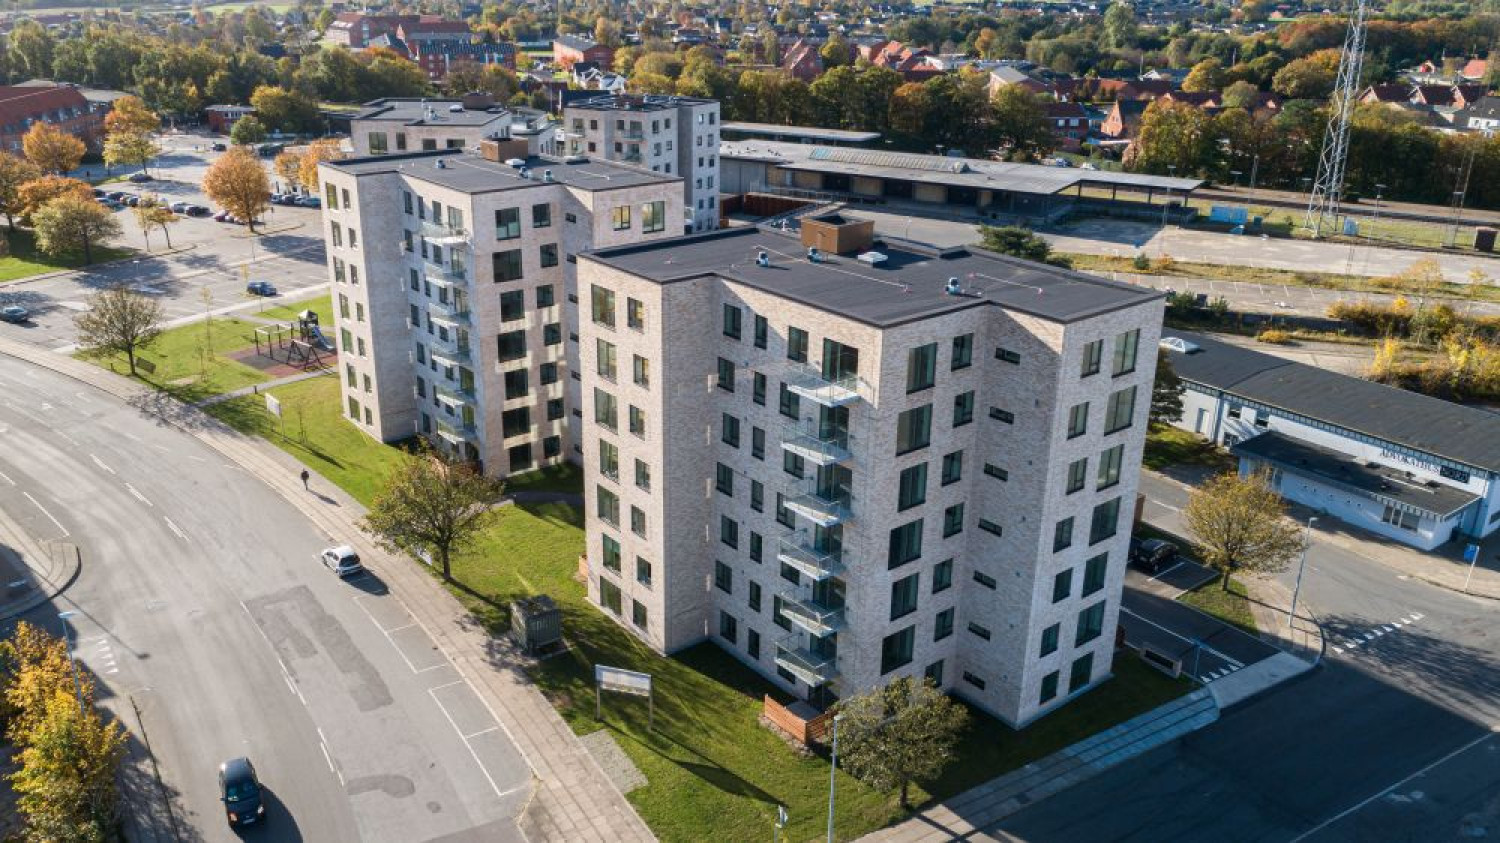 4 nye boligblokke ved station | Dansk